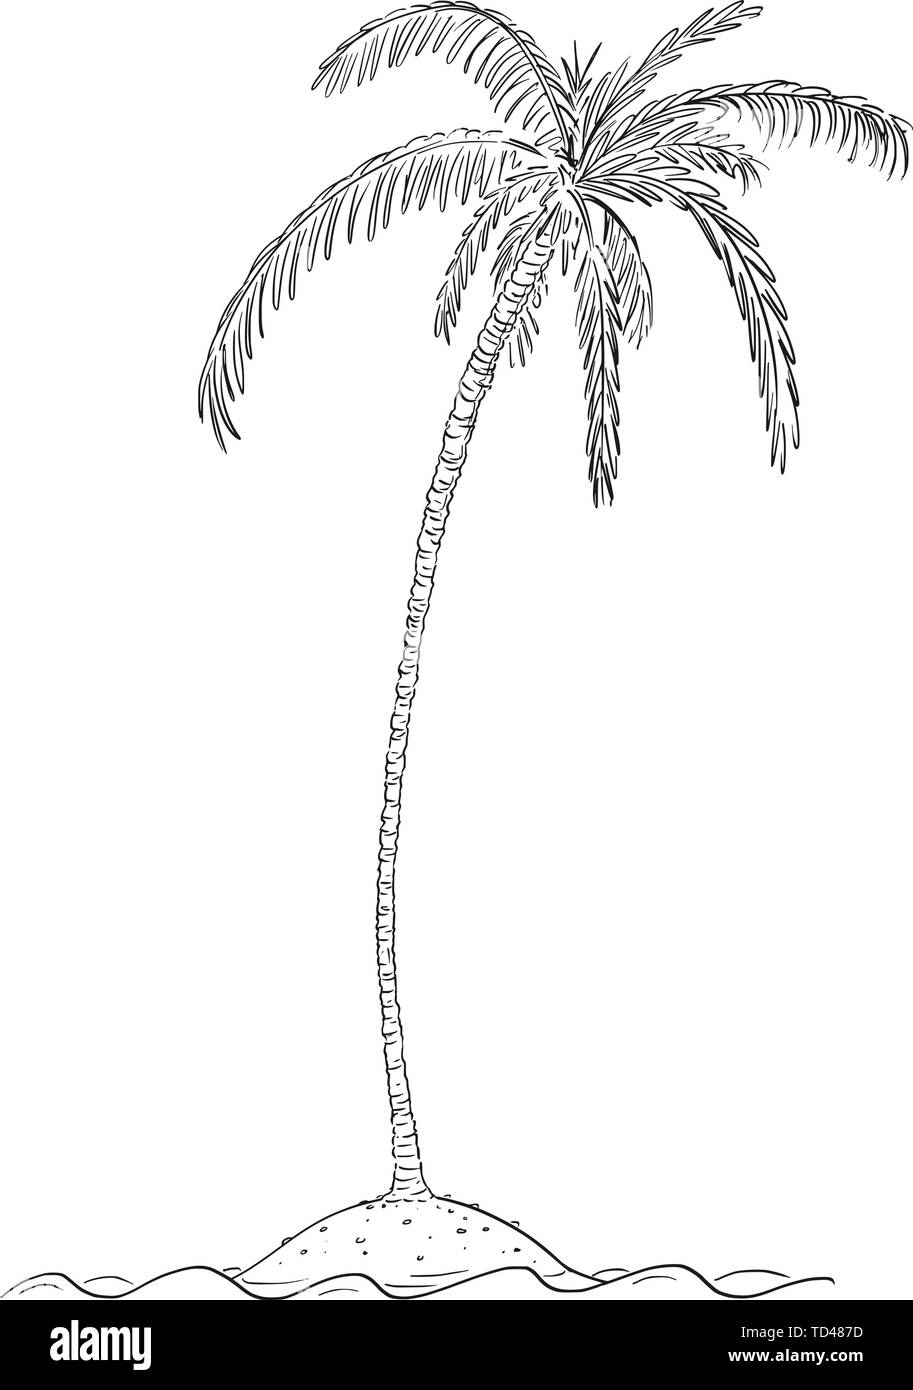 Vector cartoon illustration ou dessin de palmier croissant sur petite île au centre de l'océan. Illustration de Vecteur